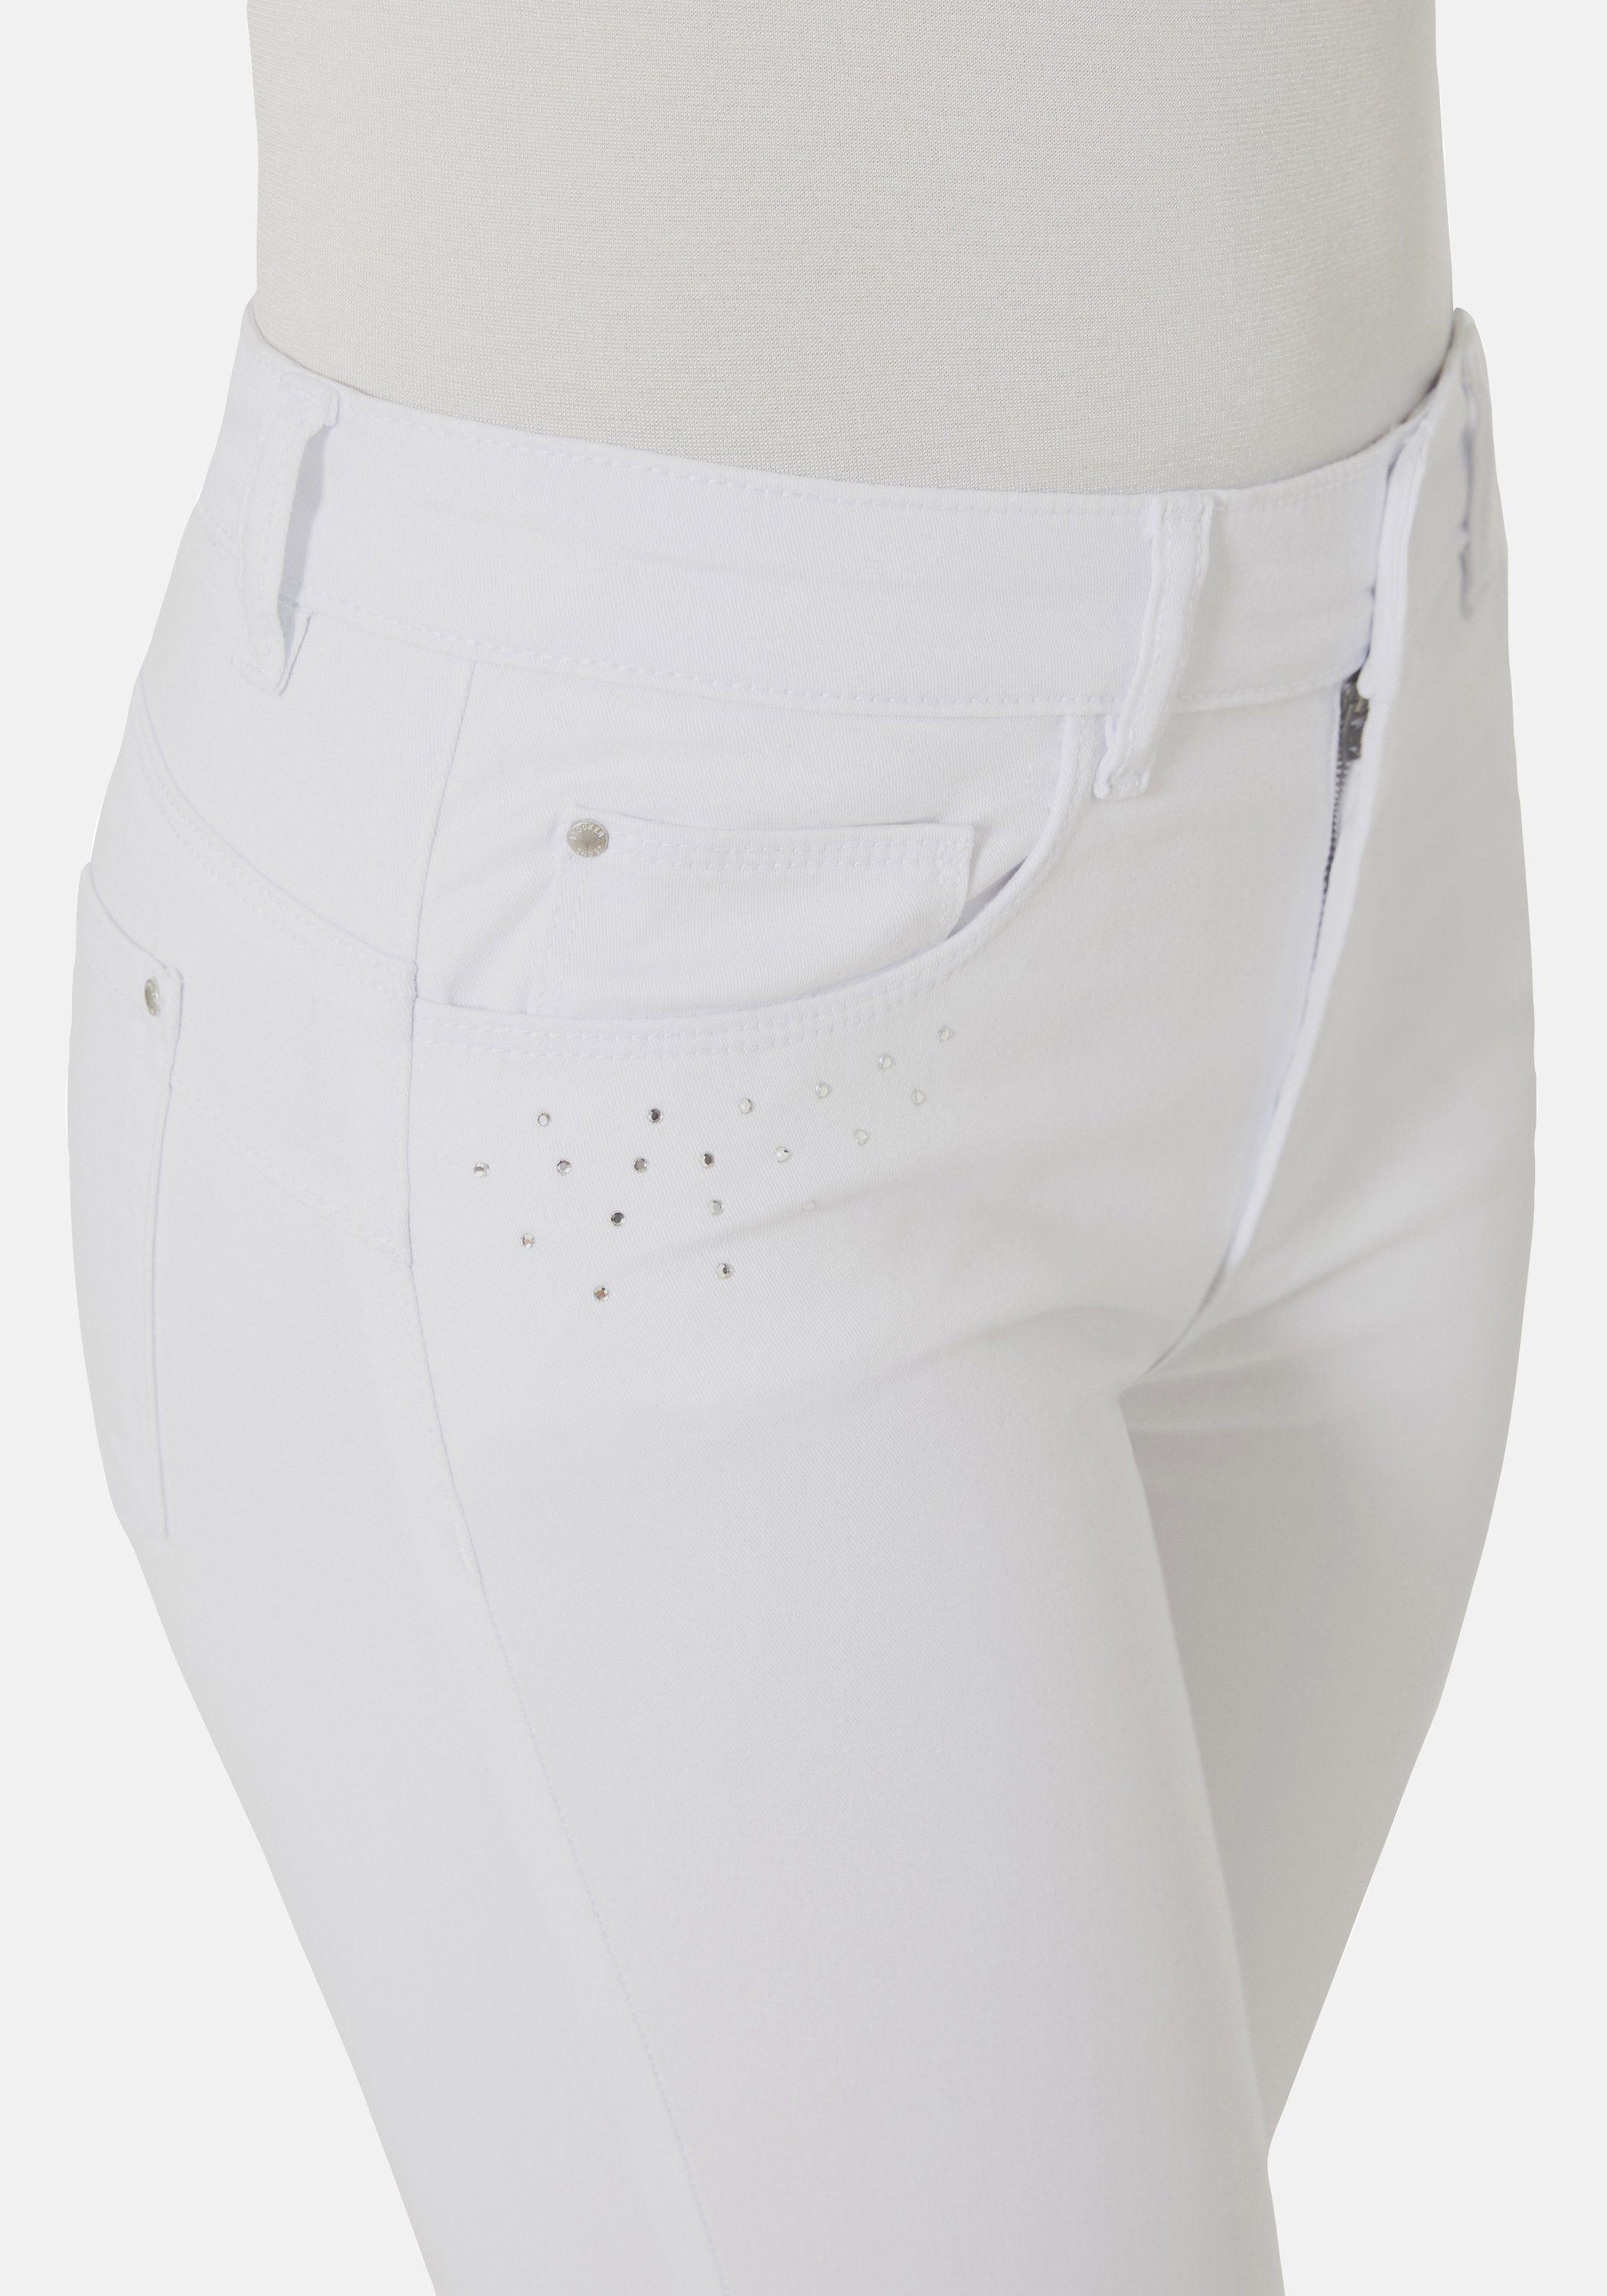 STOOKER WOMEN 5-Pocket-Jeans Rio Twill Skinny Fit in Weiß | Lyst DE